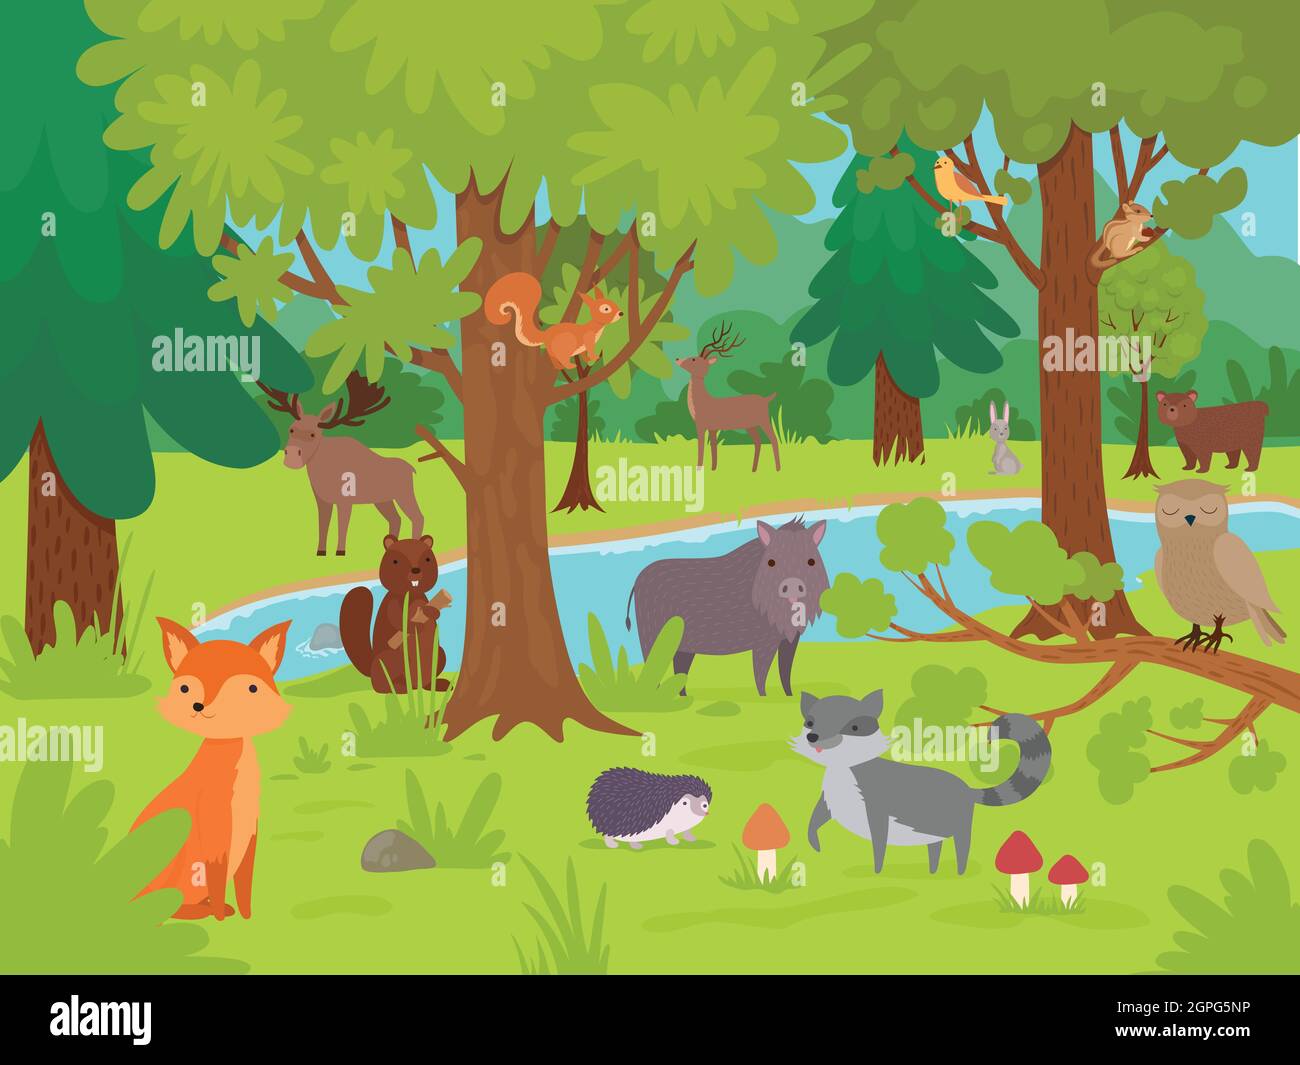 Tiere im Wald Hintergrund. Wilde niedliche glückliche Tiere leben und spielen in Waldlichtung mit großen Bäumen Vektor-Illustrationen Stock Vektor